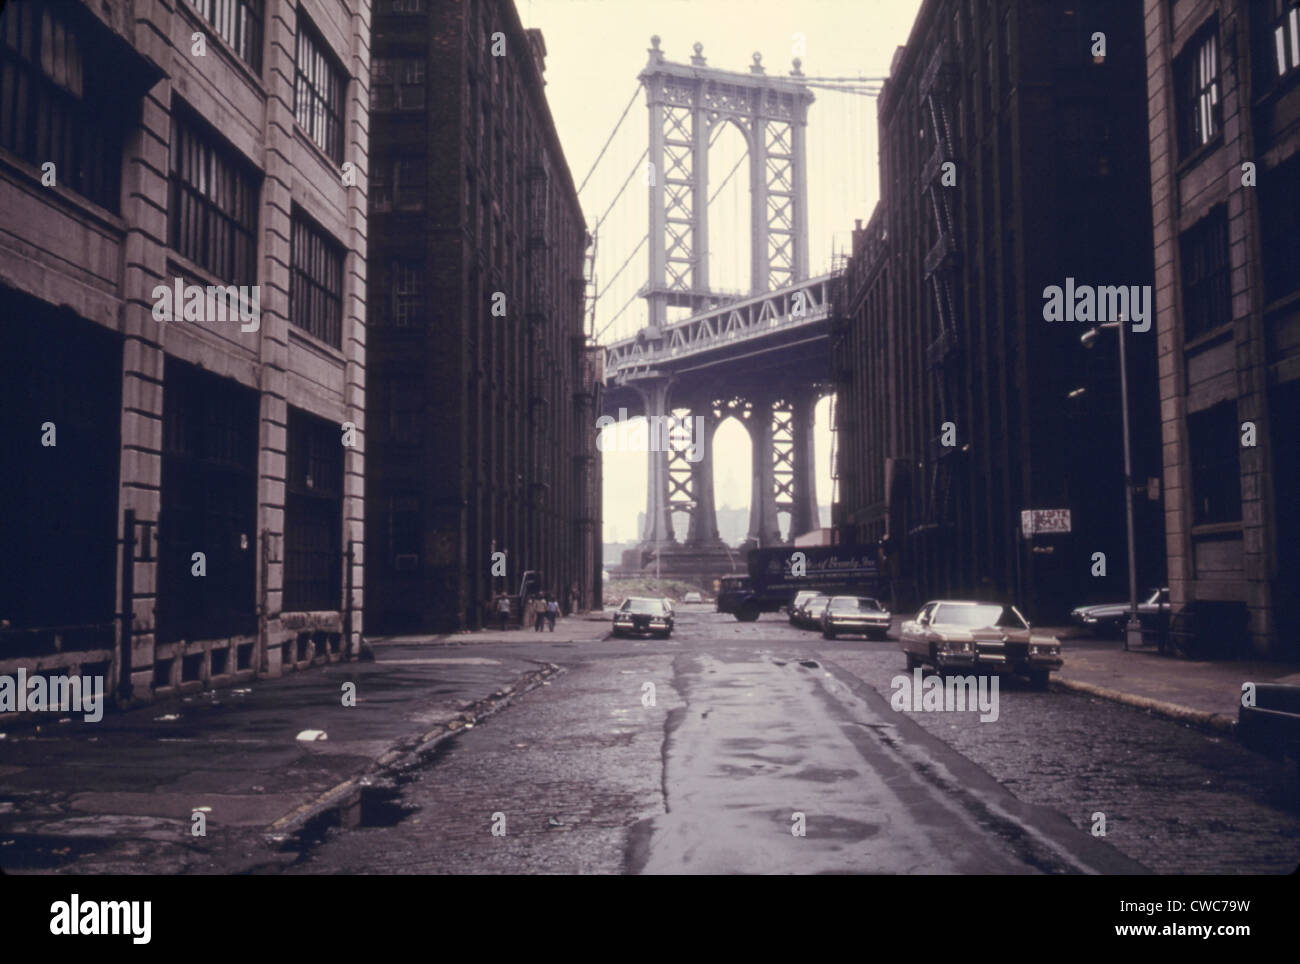 L'affichage classique de la tour du pont de Manhattan à Brooklyn. Juin 1974. Banque D'Images